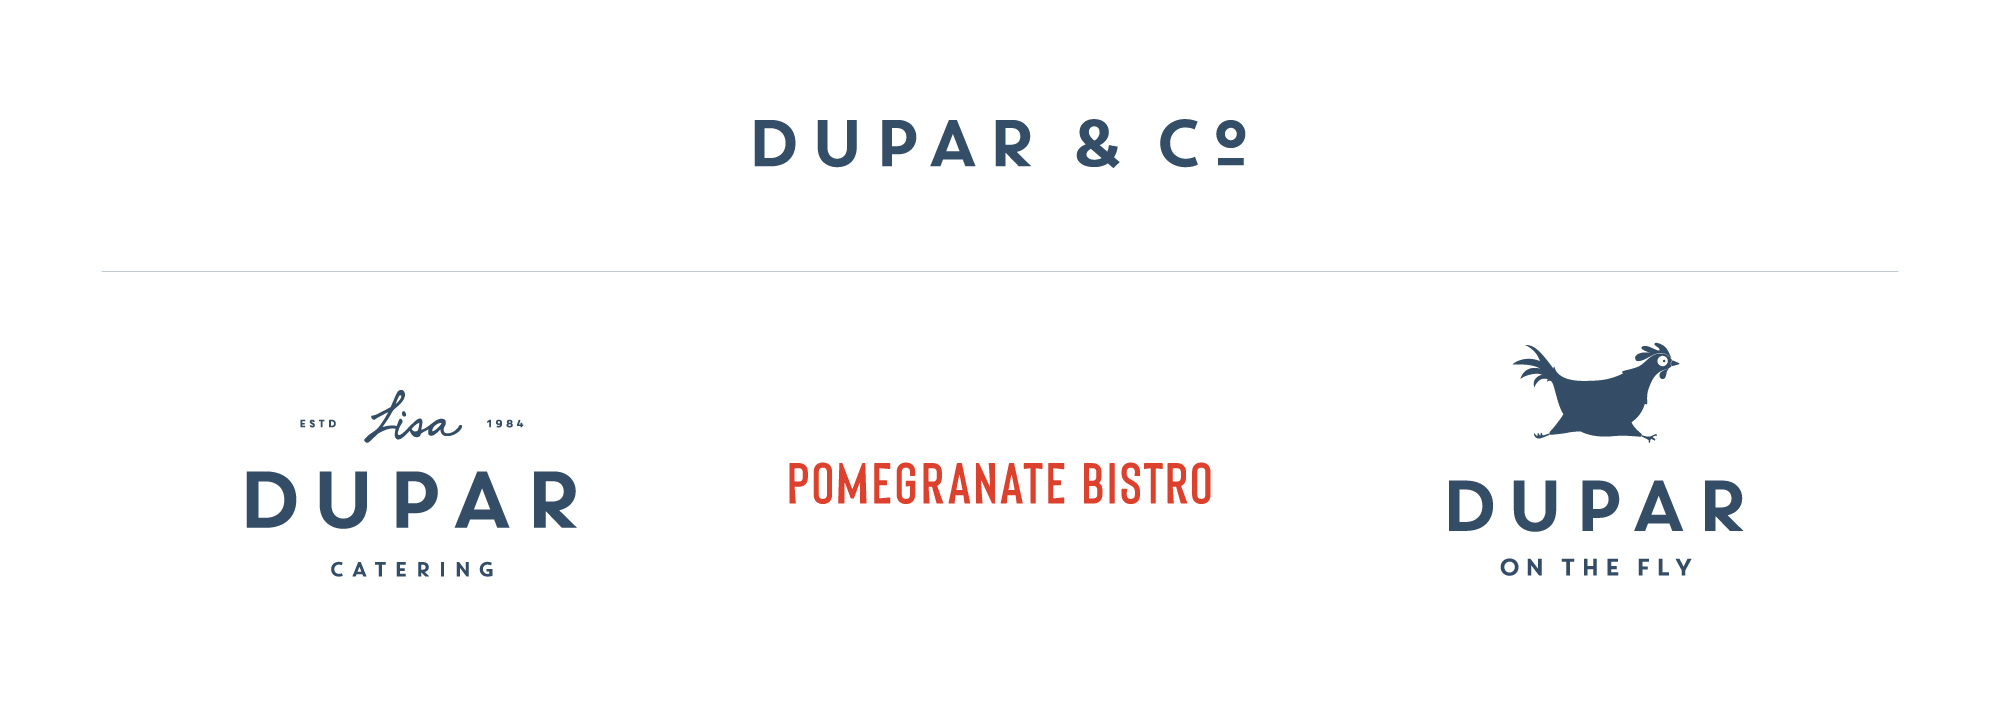 Dupar & Co. Brand Family